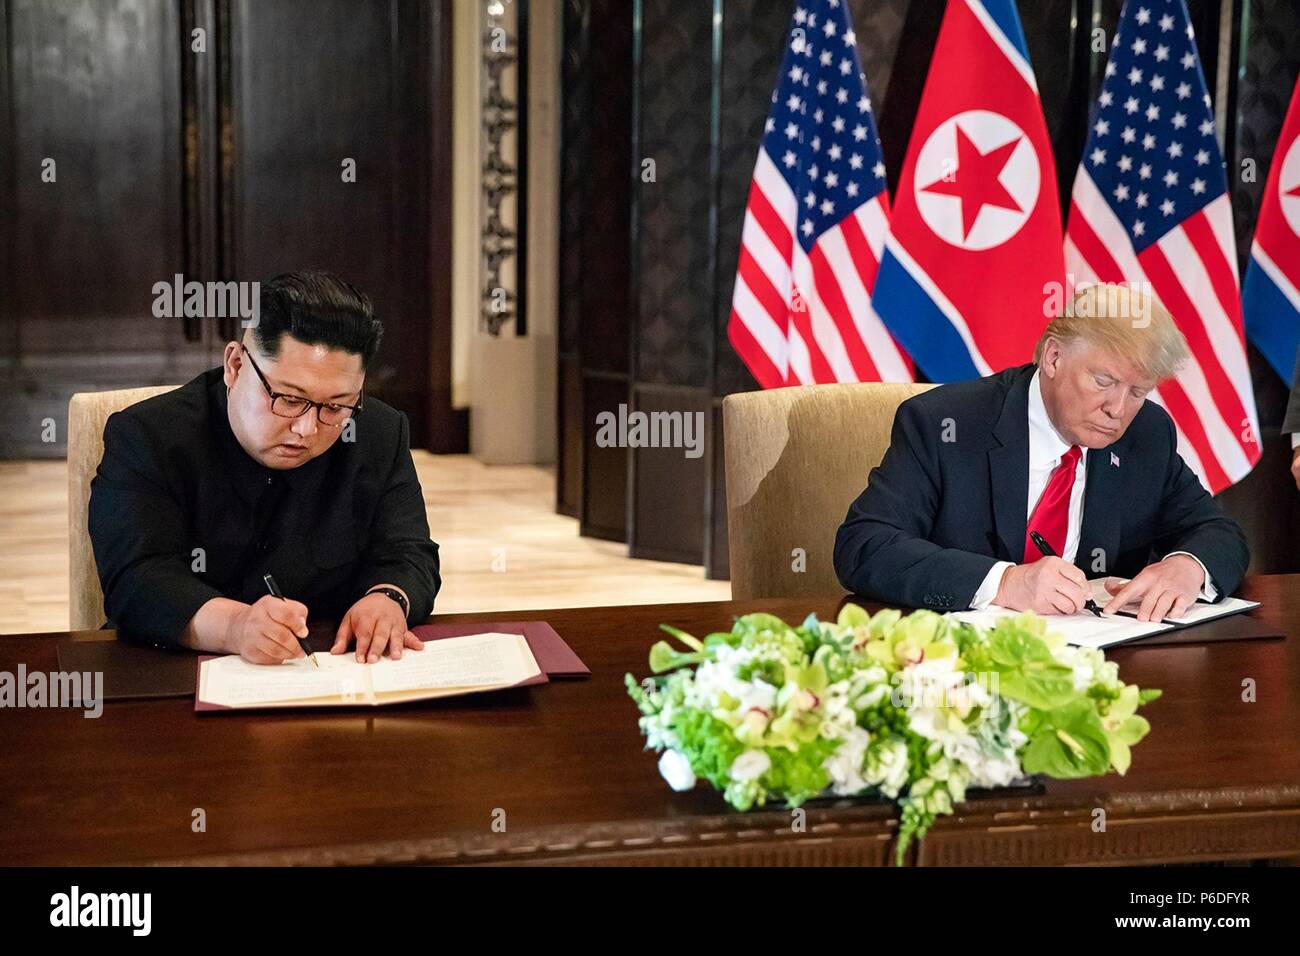 Us-Präsident Donald Trump, rechts, und nordkoreanischen Führer Kim Jong Un während einer Zeremonie an der Capella resort Juni 12, 2018 in Insel Sentosa, Singapur. Stockfoto